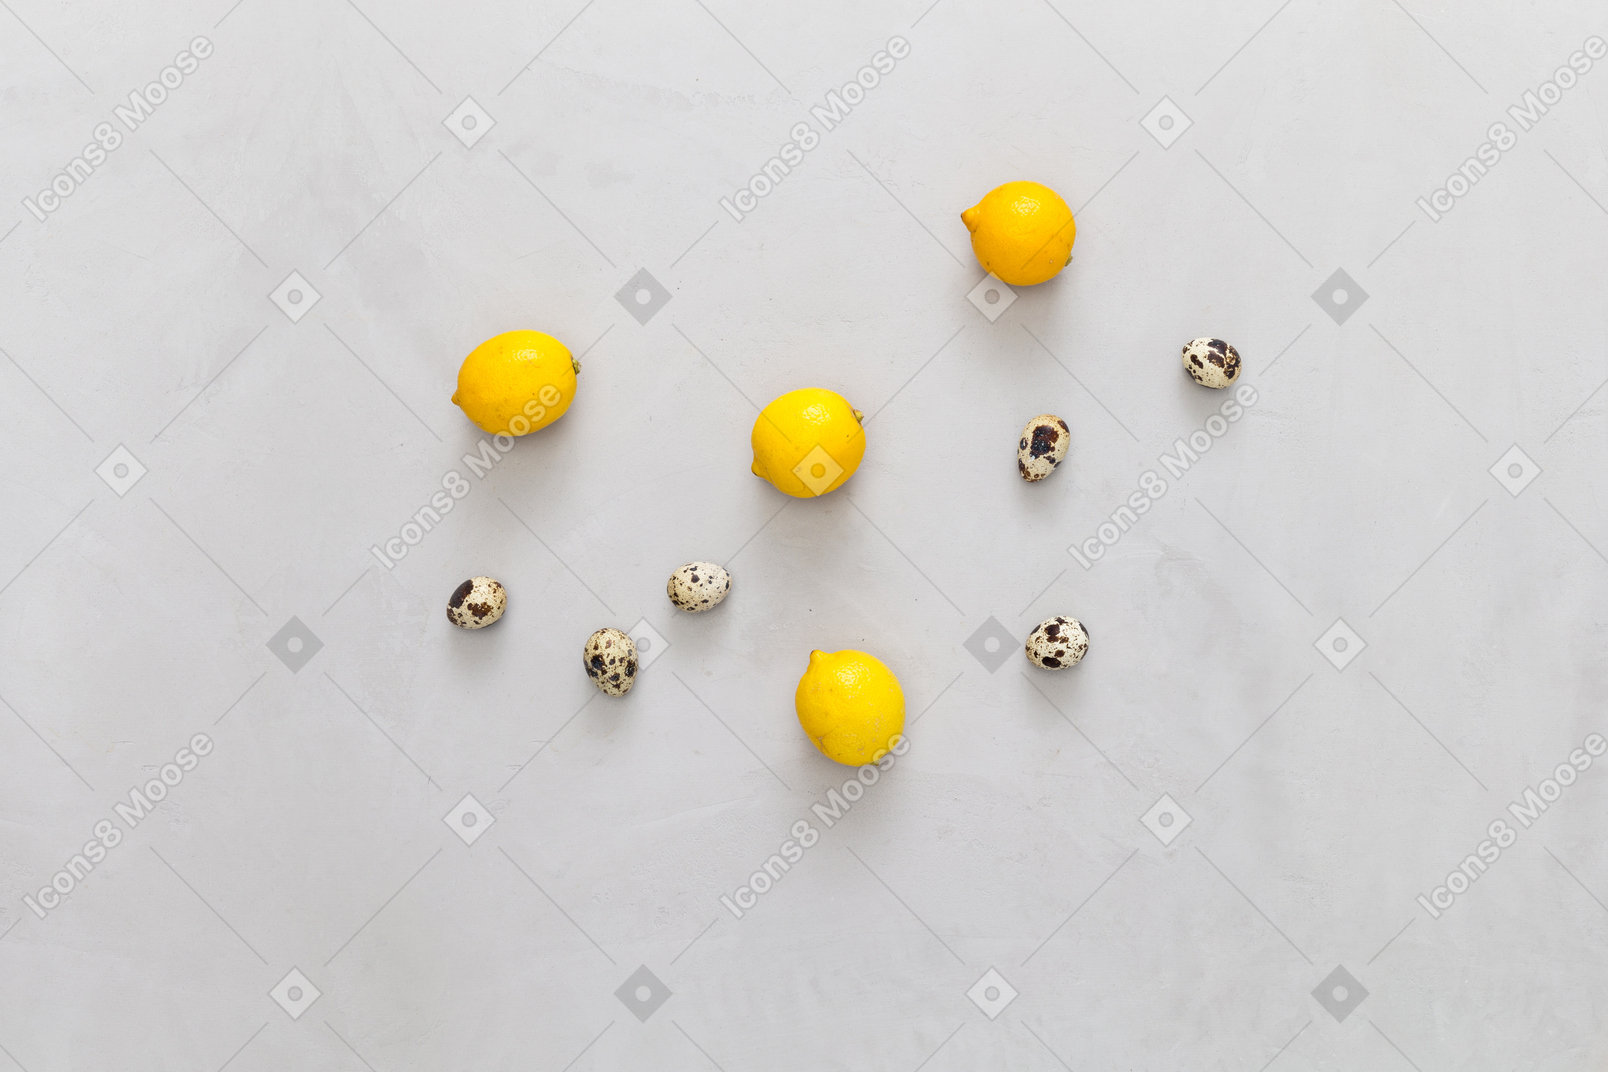 Alcuni limoni e uova di quaglia